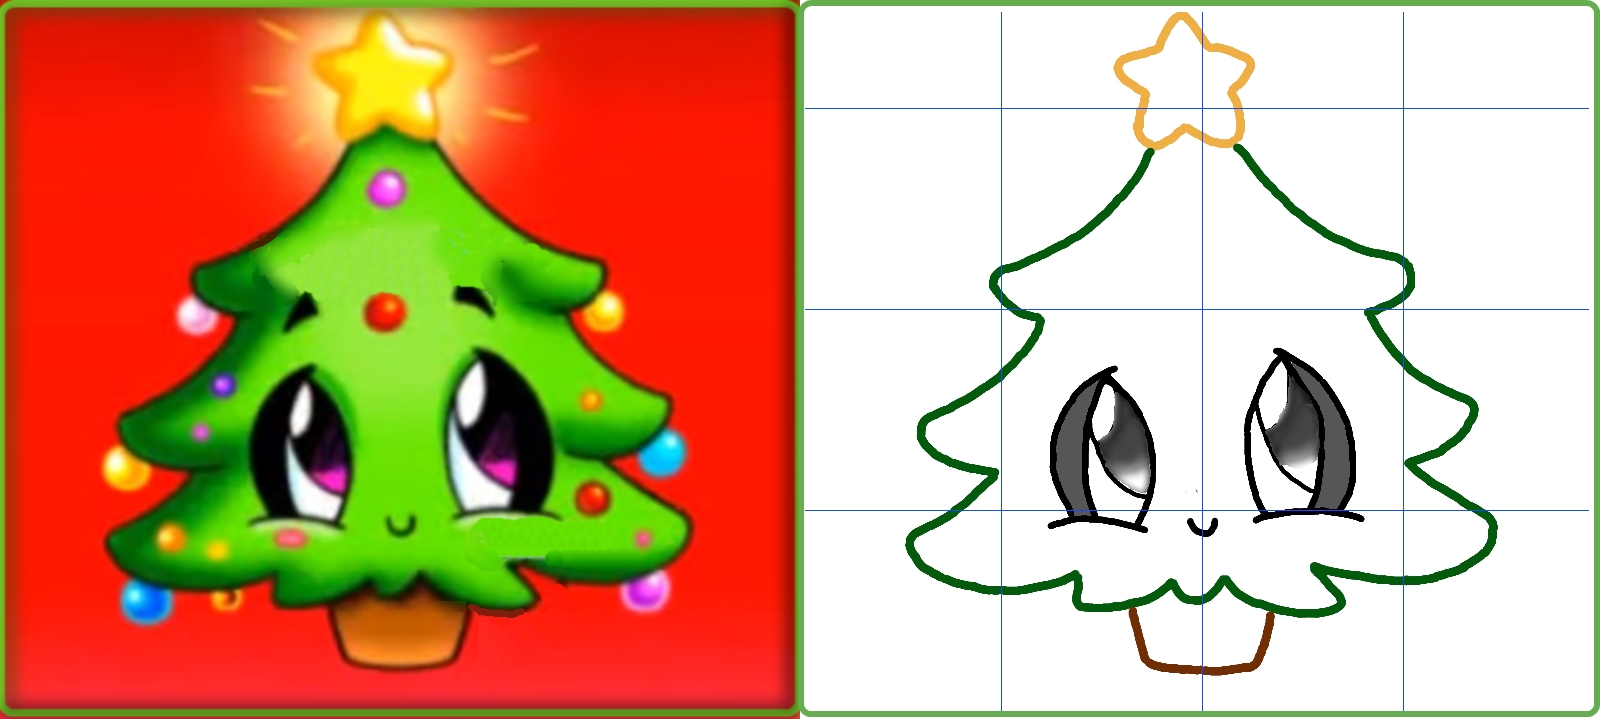 Malovali jsme očima nakresleného vánočního stromu